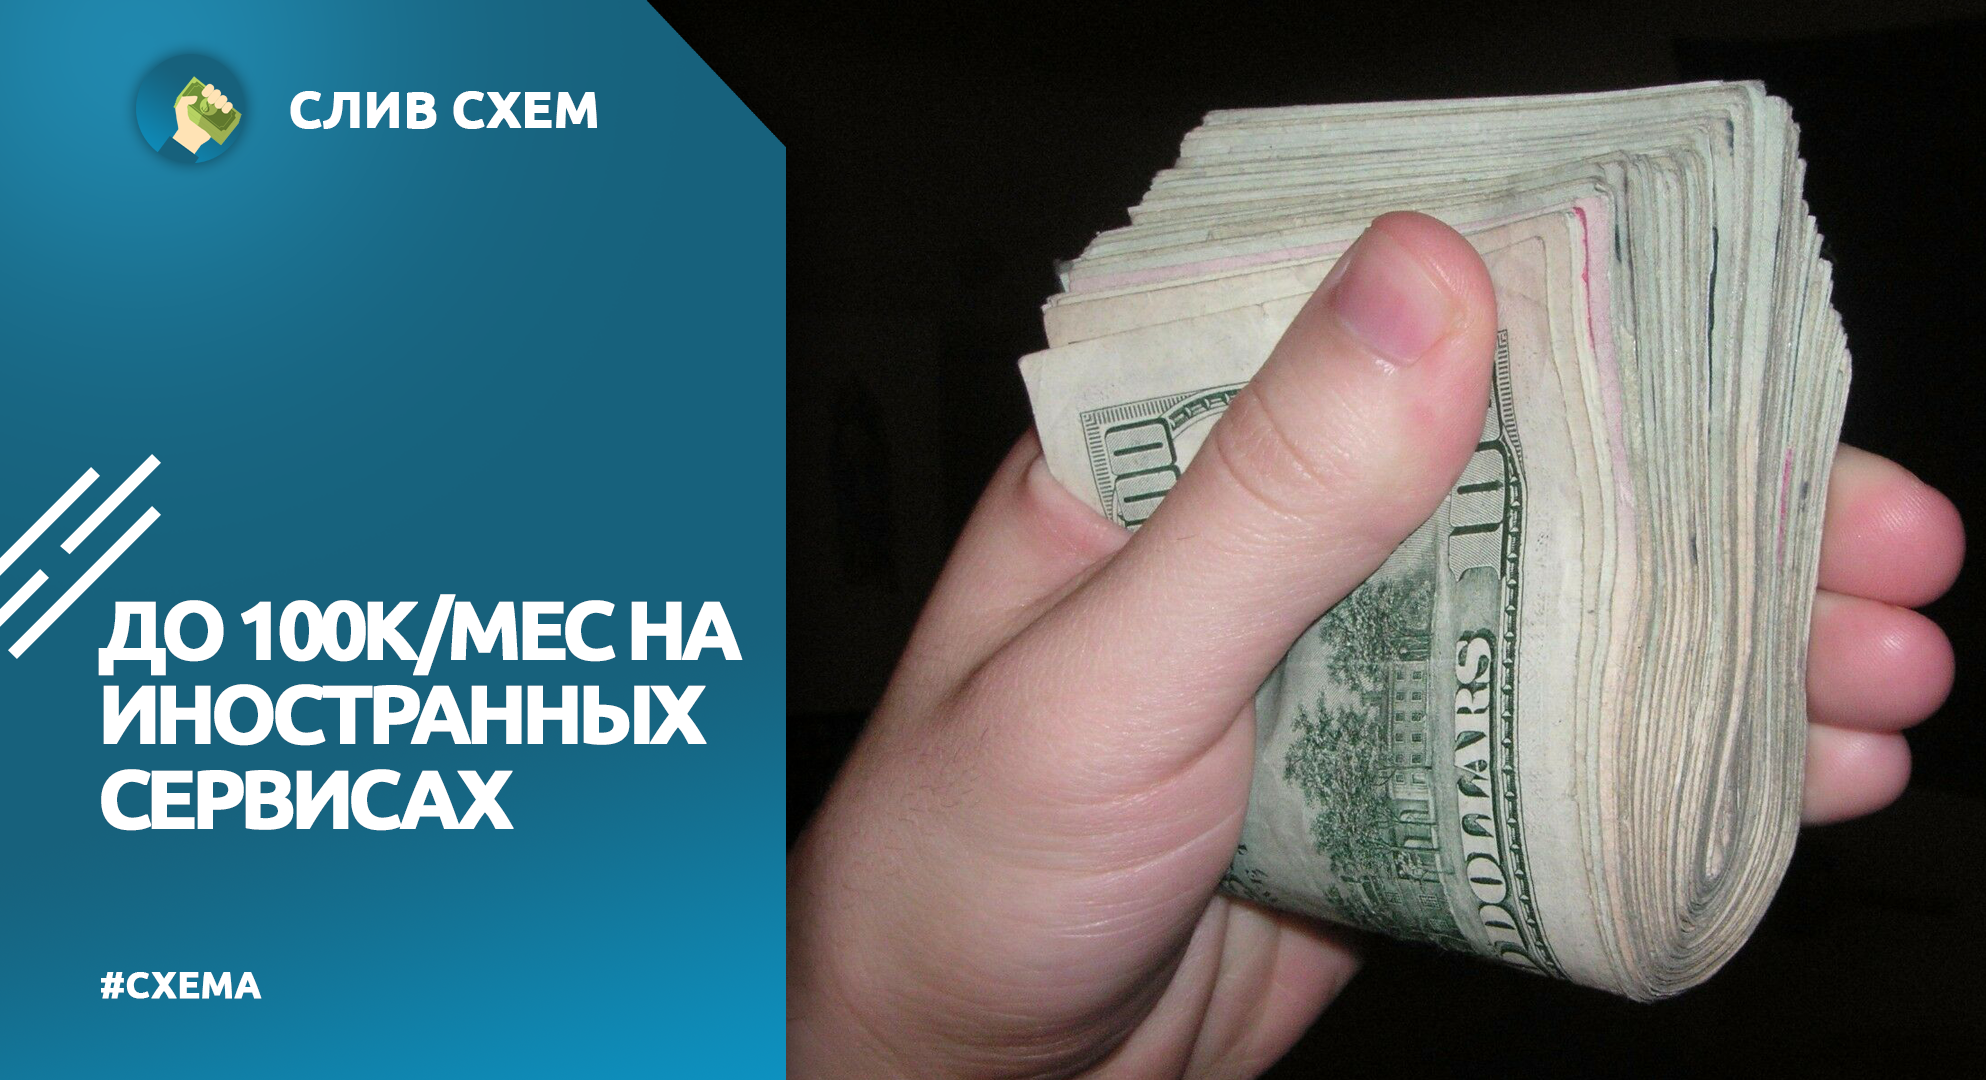 Телеграмм заработок без вложений на русском с выводом денег фото 63